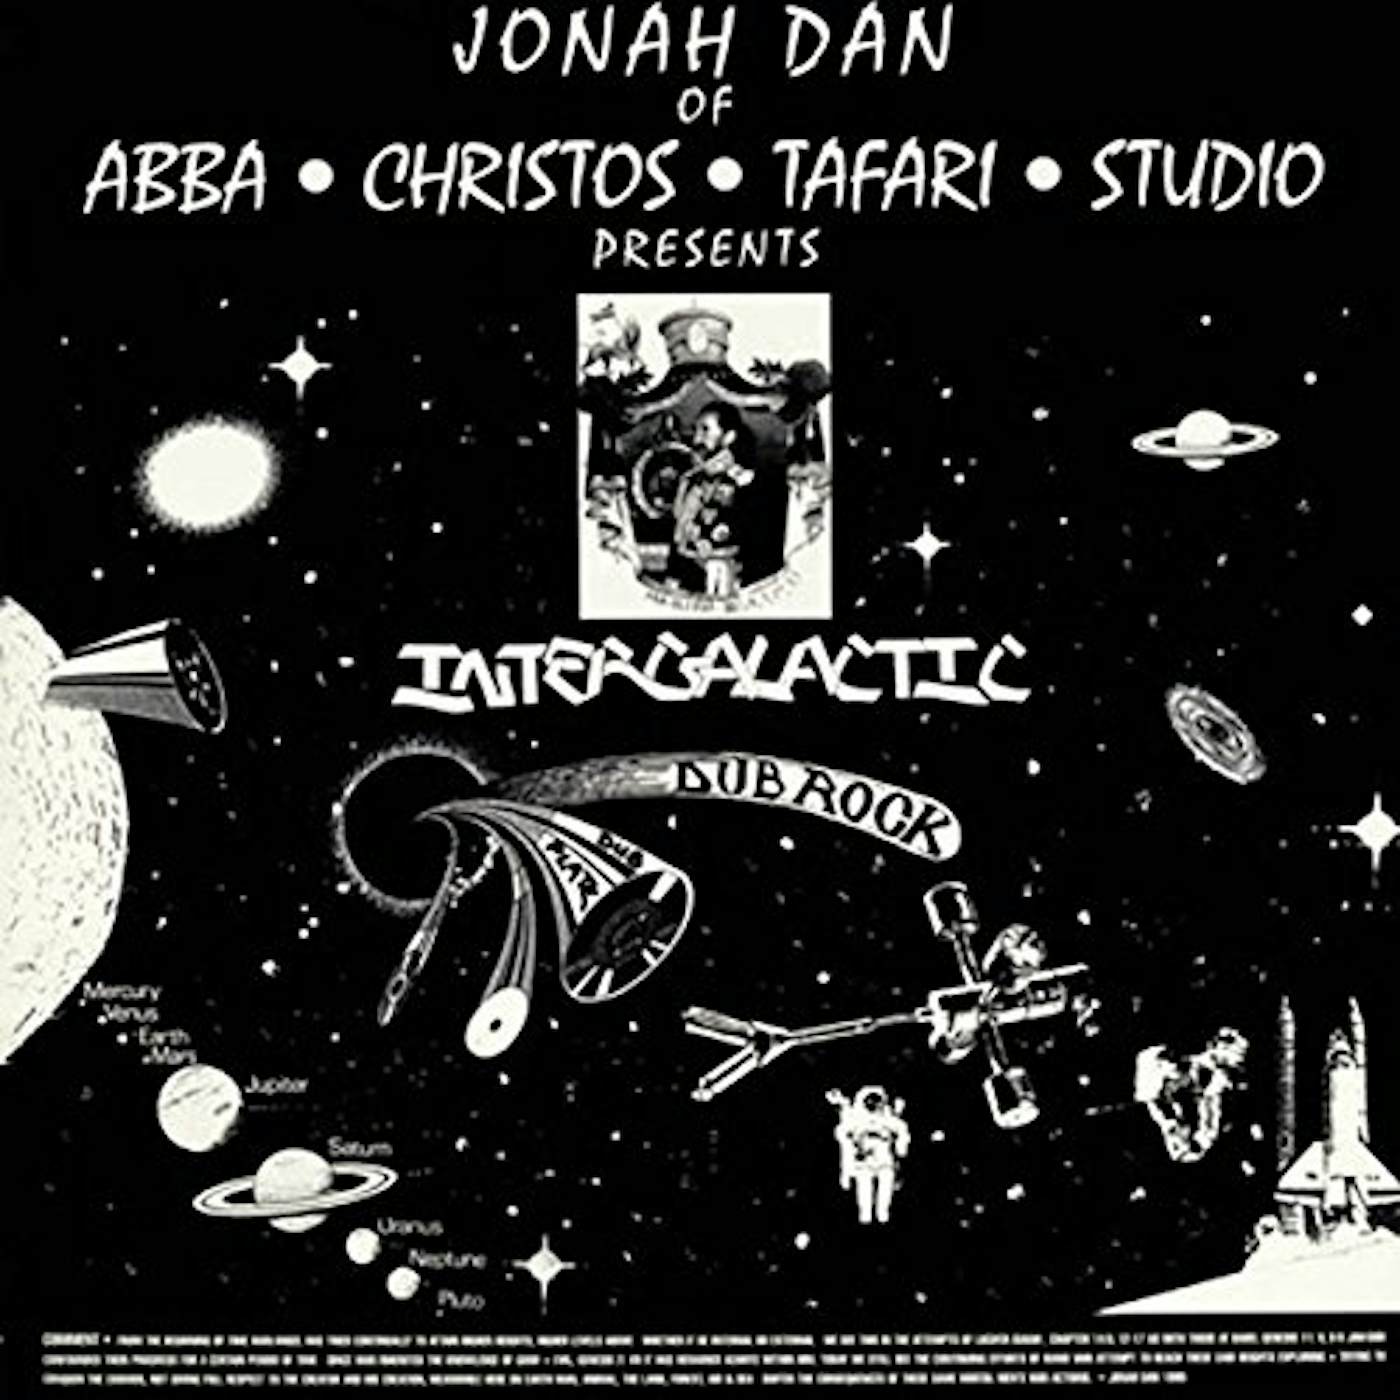 Jonah Dan Intergalactic Dub Rock Vinyl Record